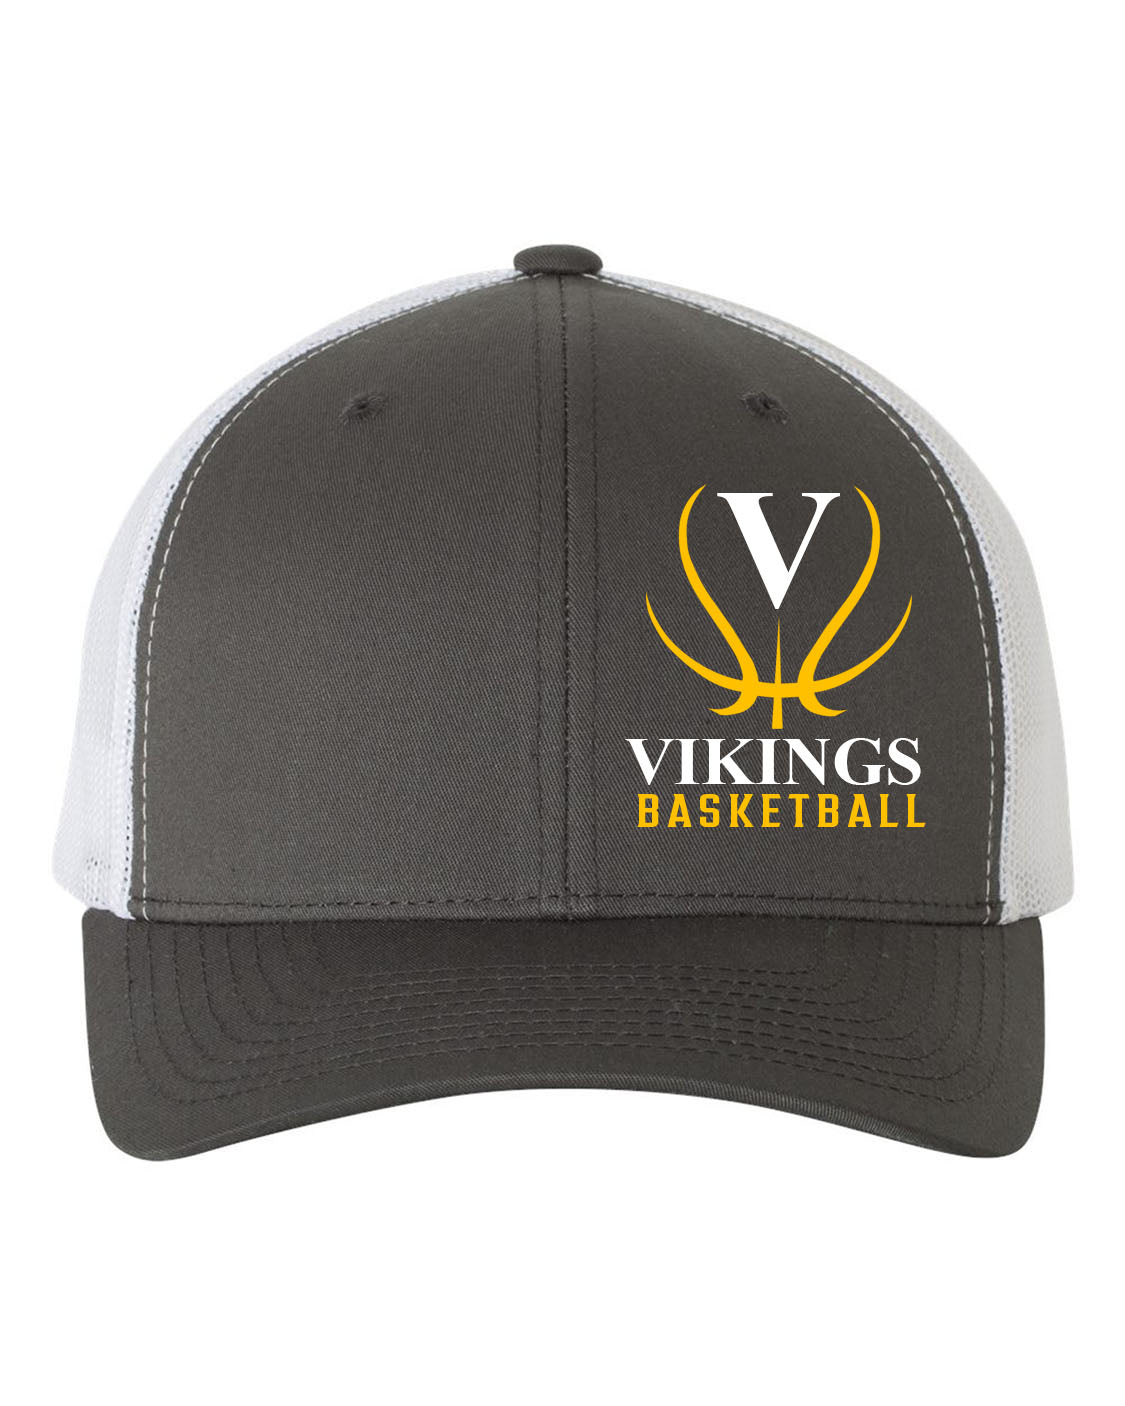 Vikings Basketball Design 3 Trucker Hat